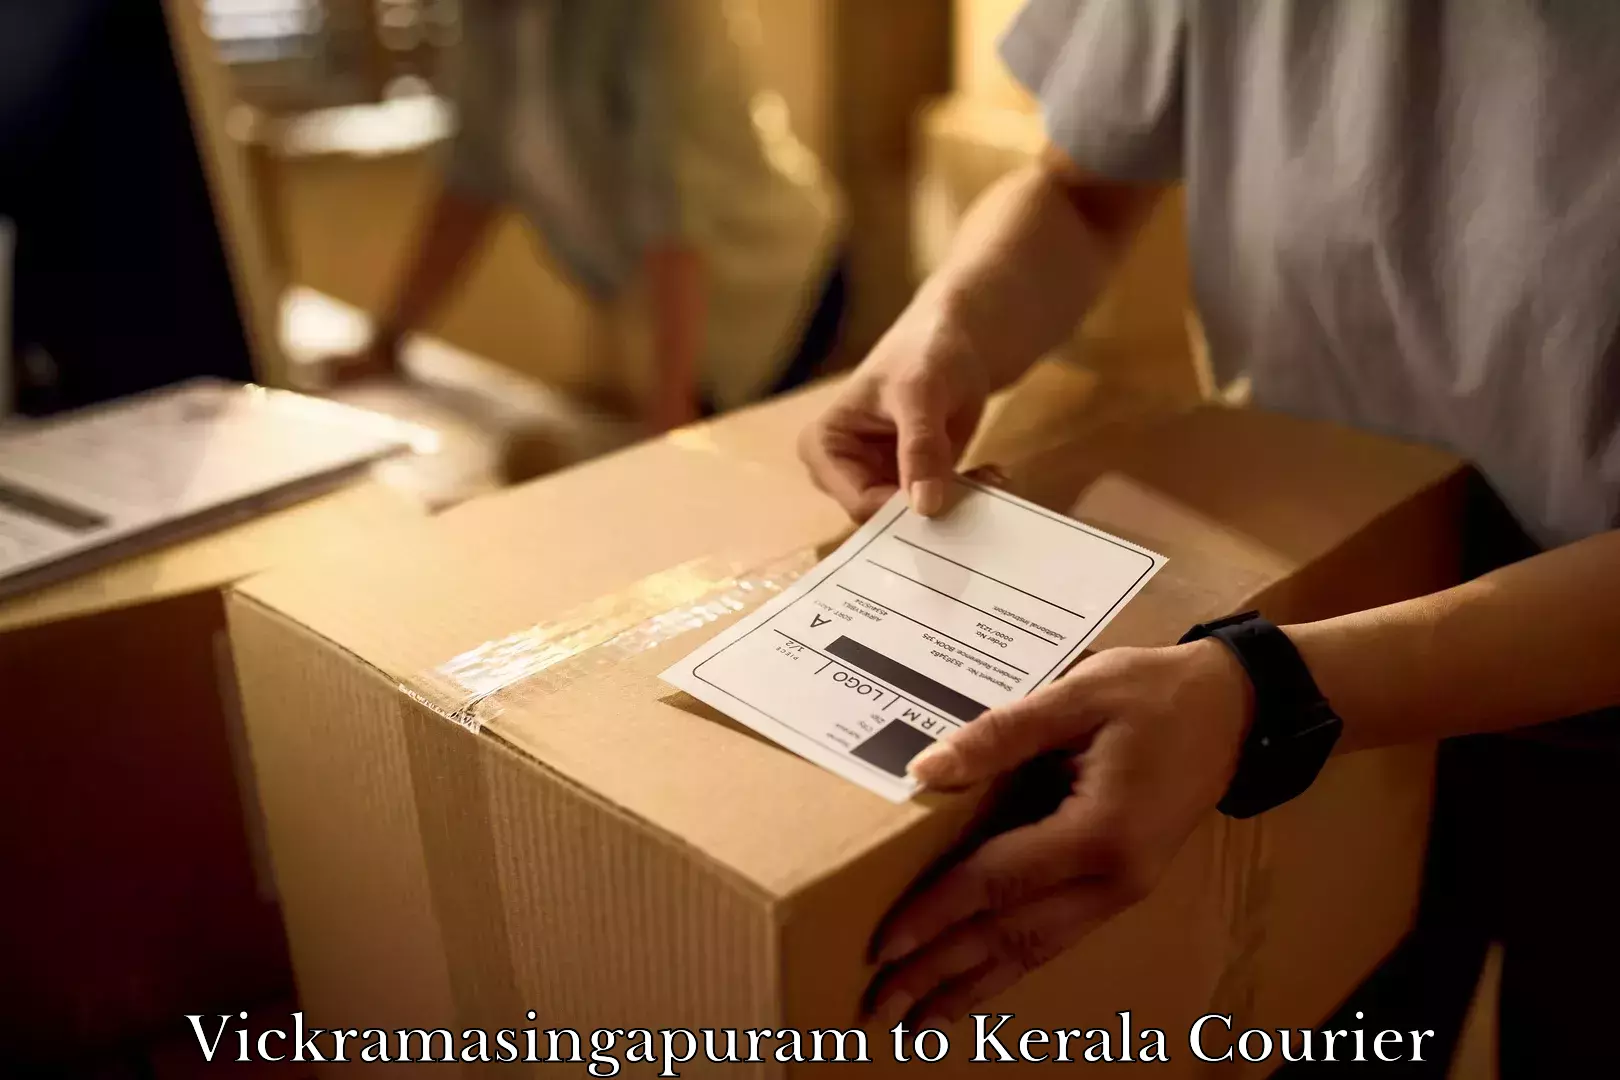 Furniture moving experts Vickramasingapuram to Kiliyanthara